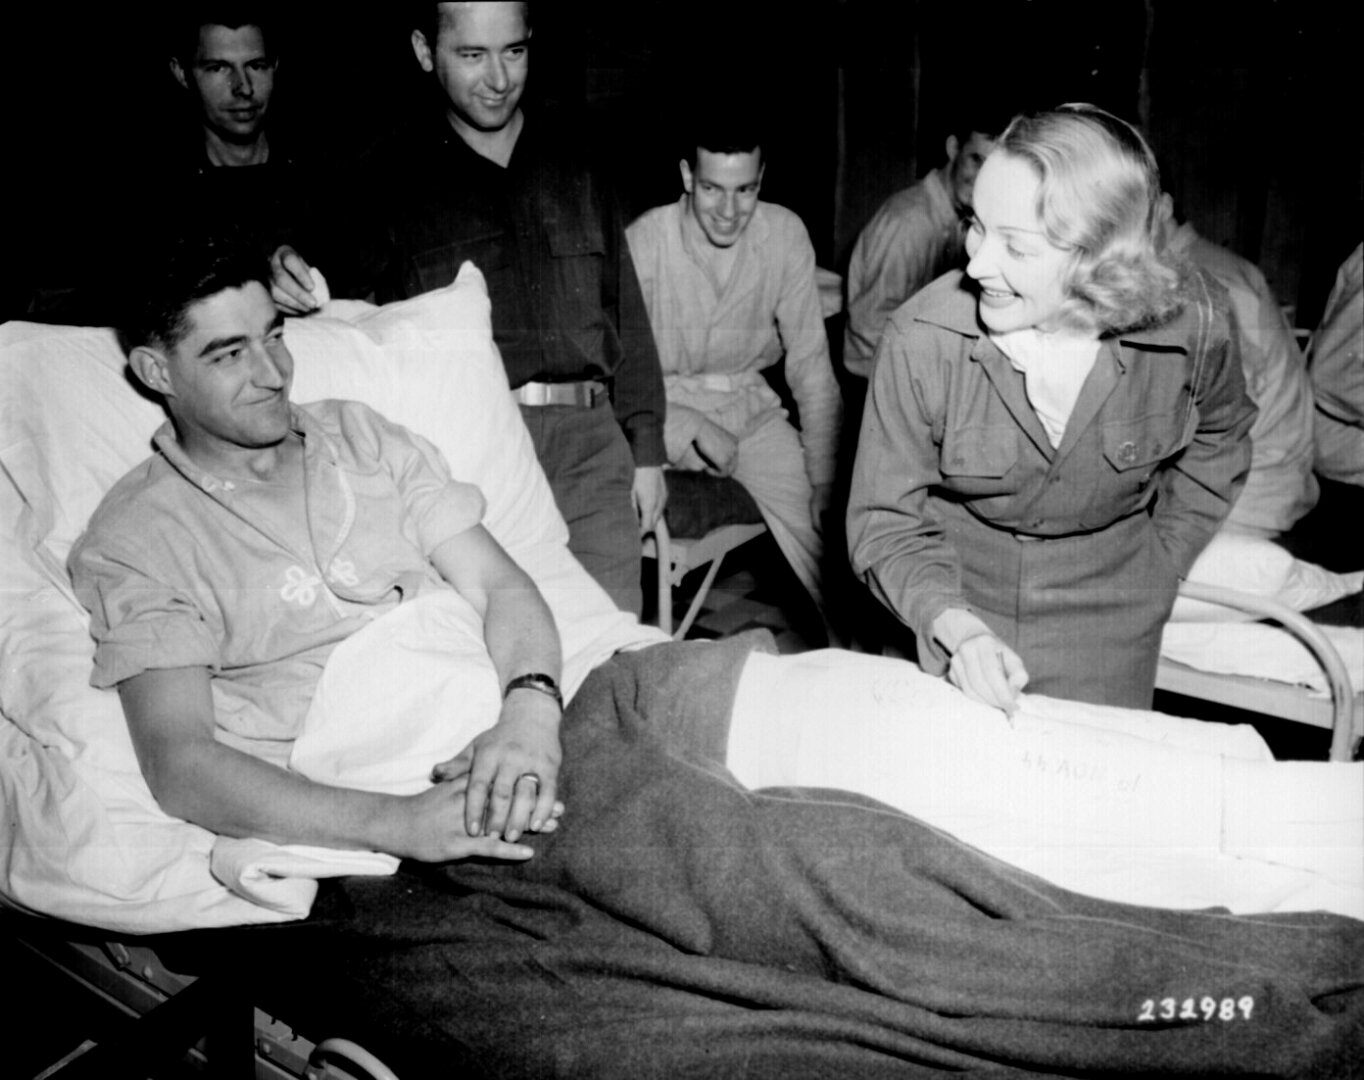 Marlene Dietrich a mozicsillag Earl E. McFarland sebesült katona begipszelt lábára írja nevét, az Egyesült Államok tábori kórháznál Belgiumban, 1944. november 24-én, fellépését követően - forrás: wikipedia/közkincs